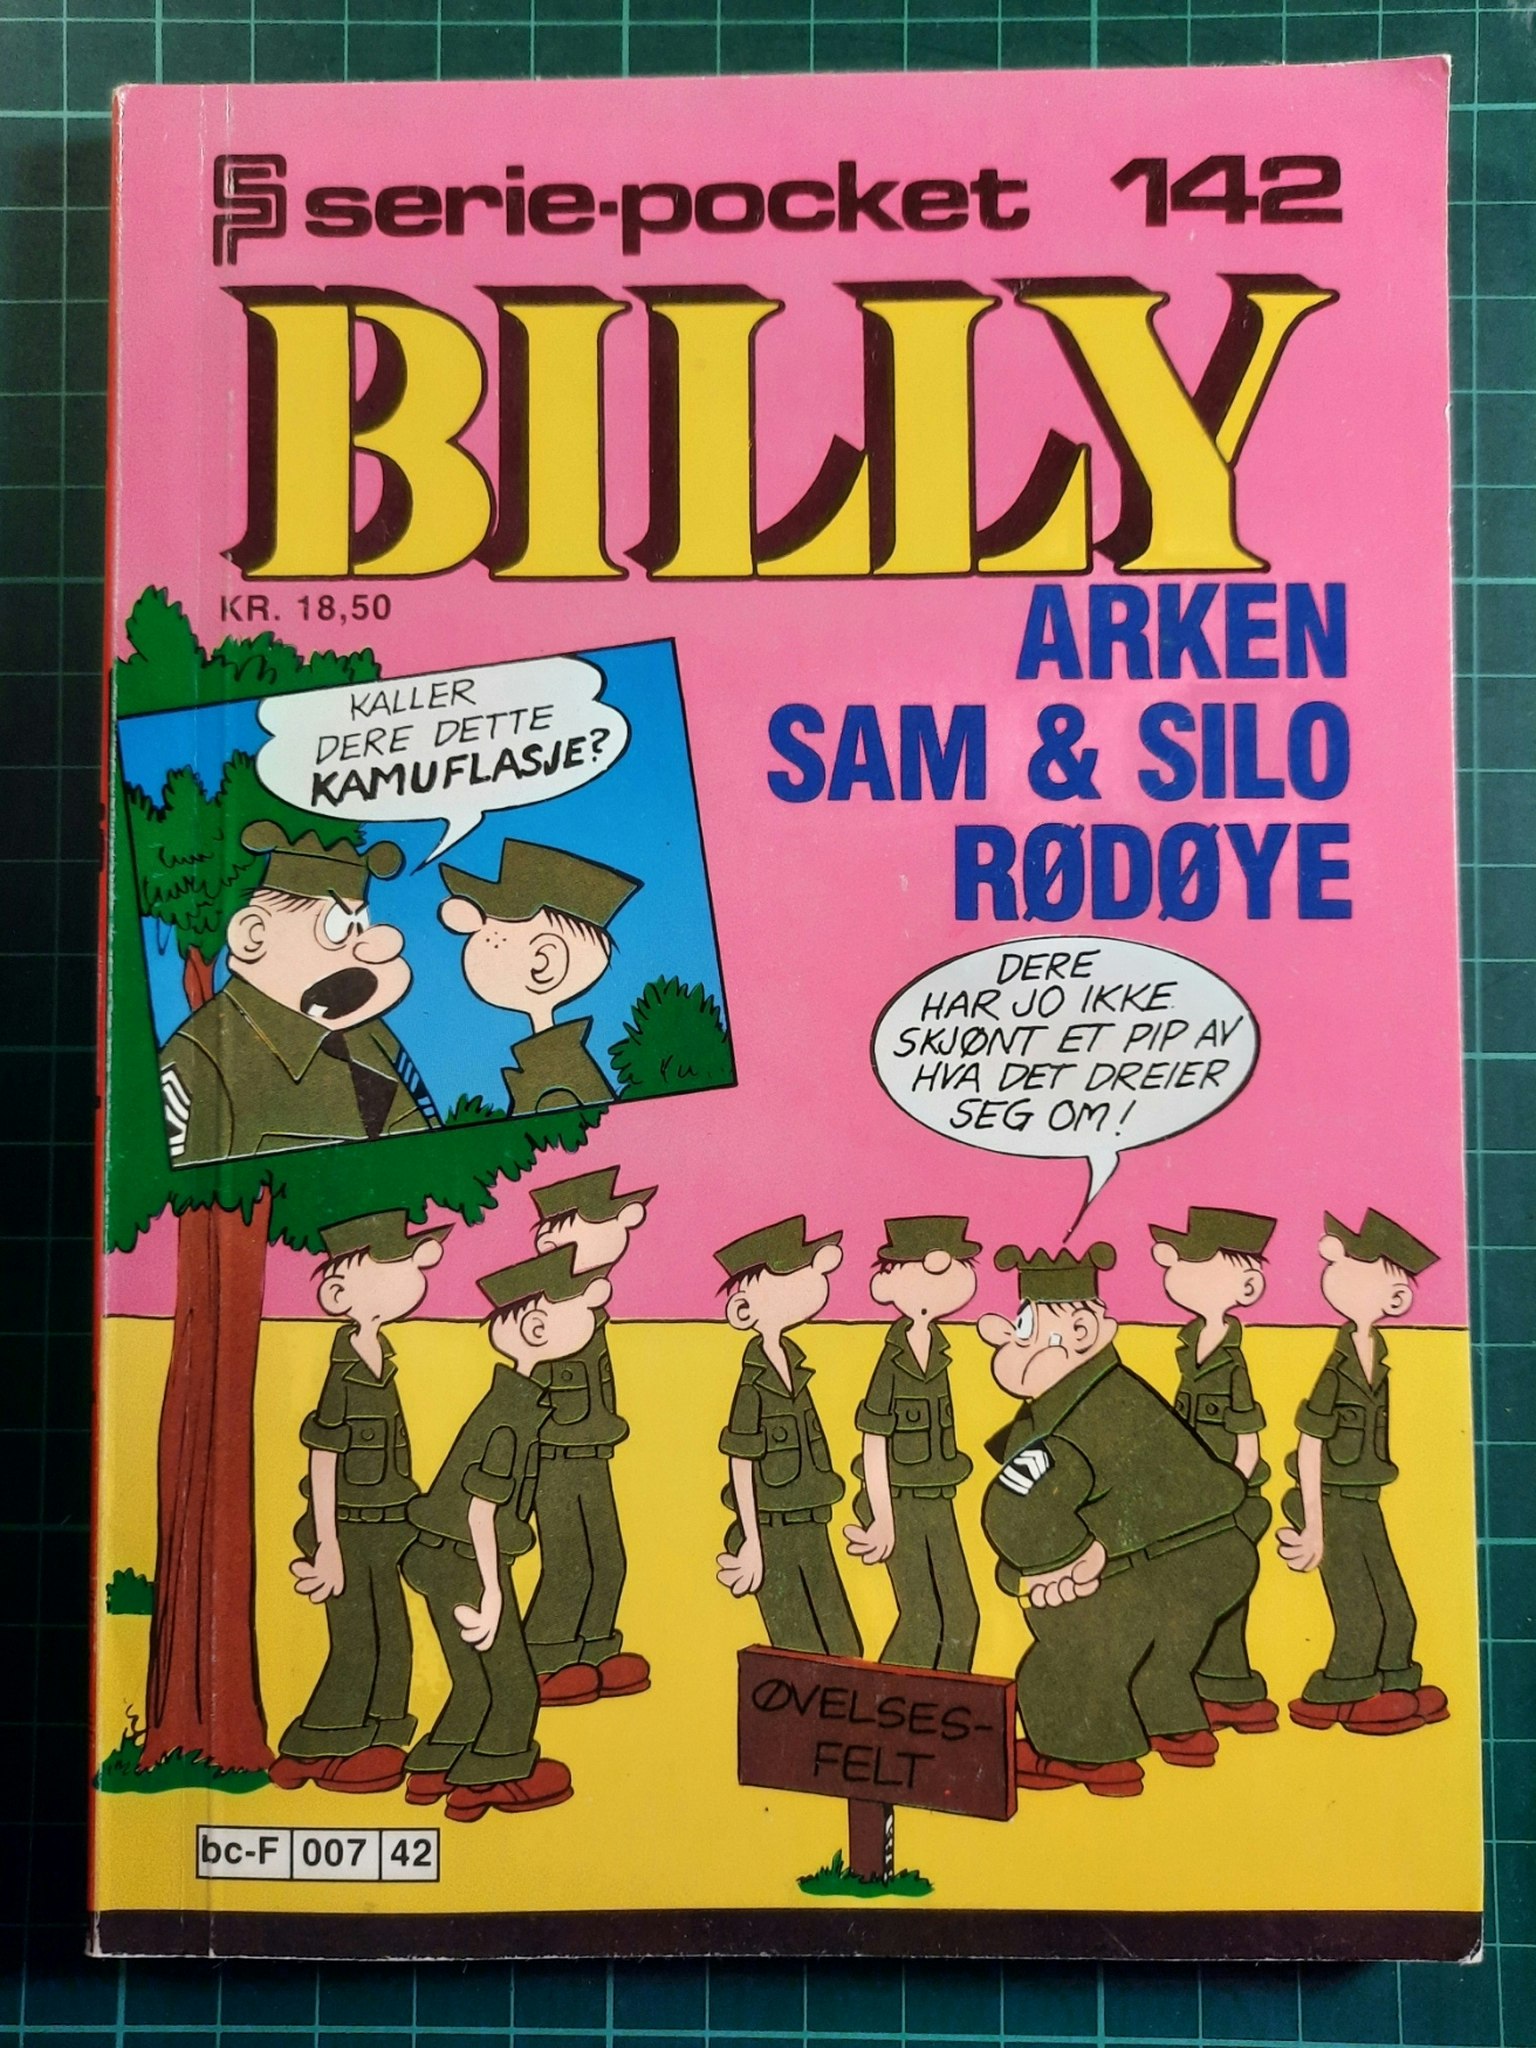 Serie-pocket 142 : Billy